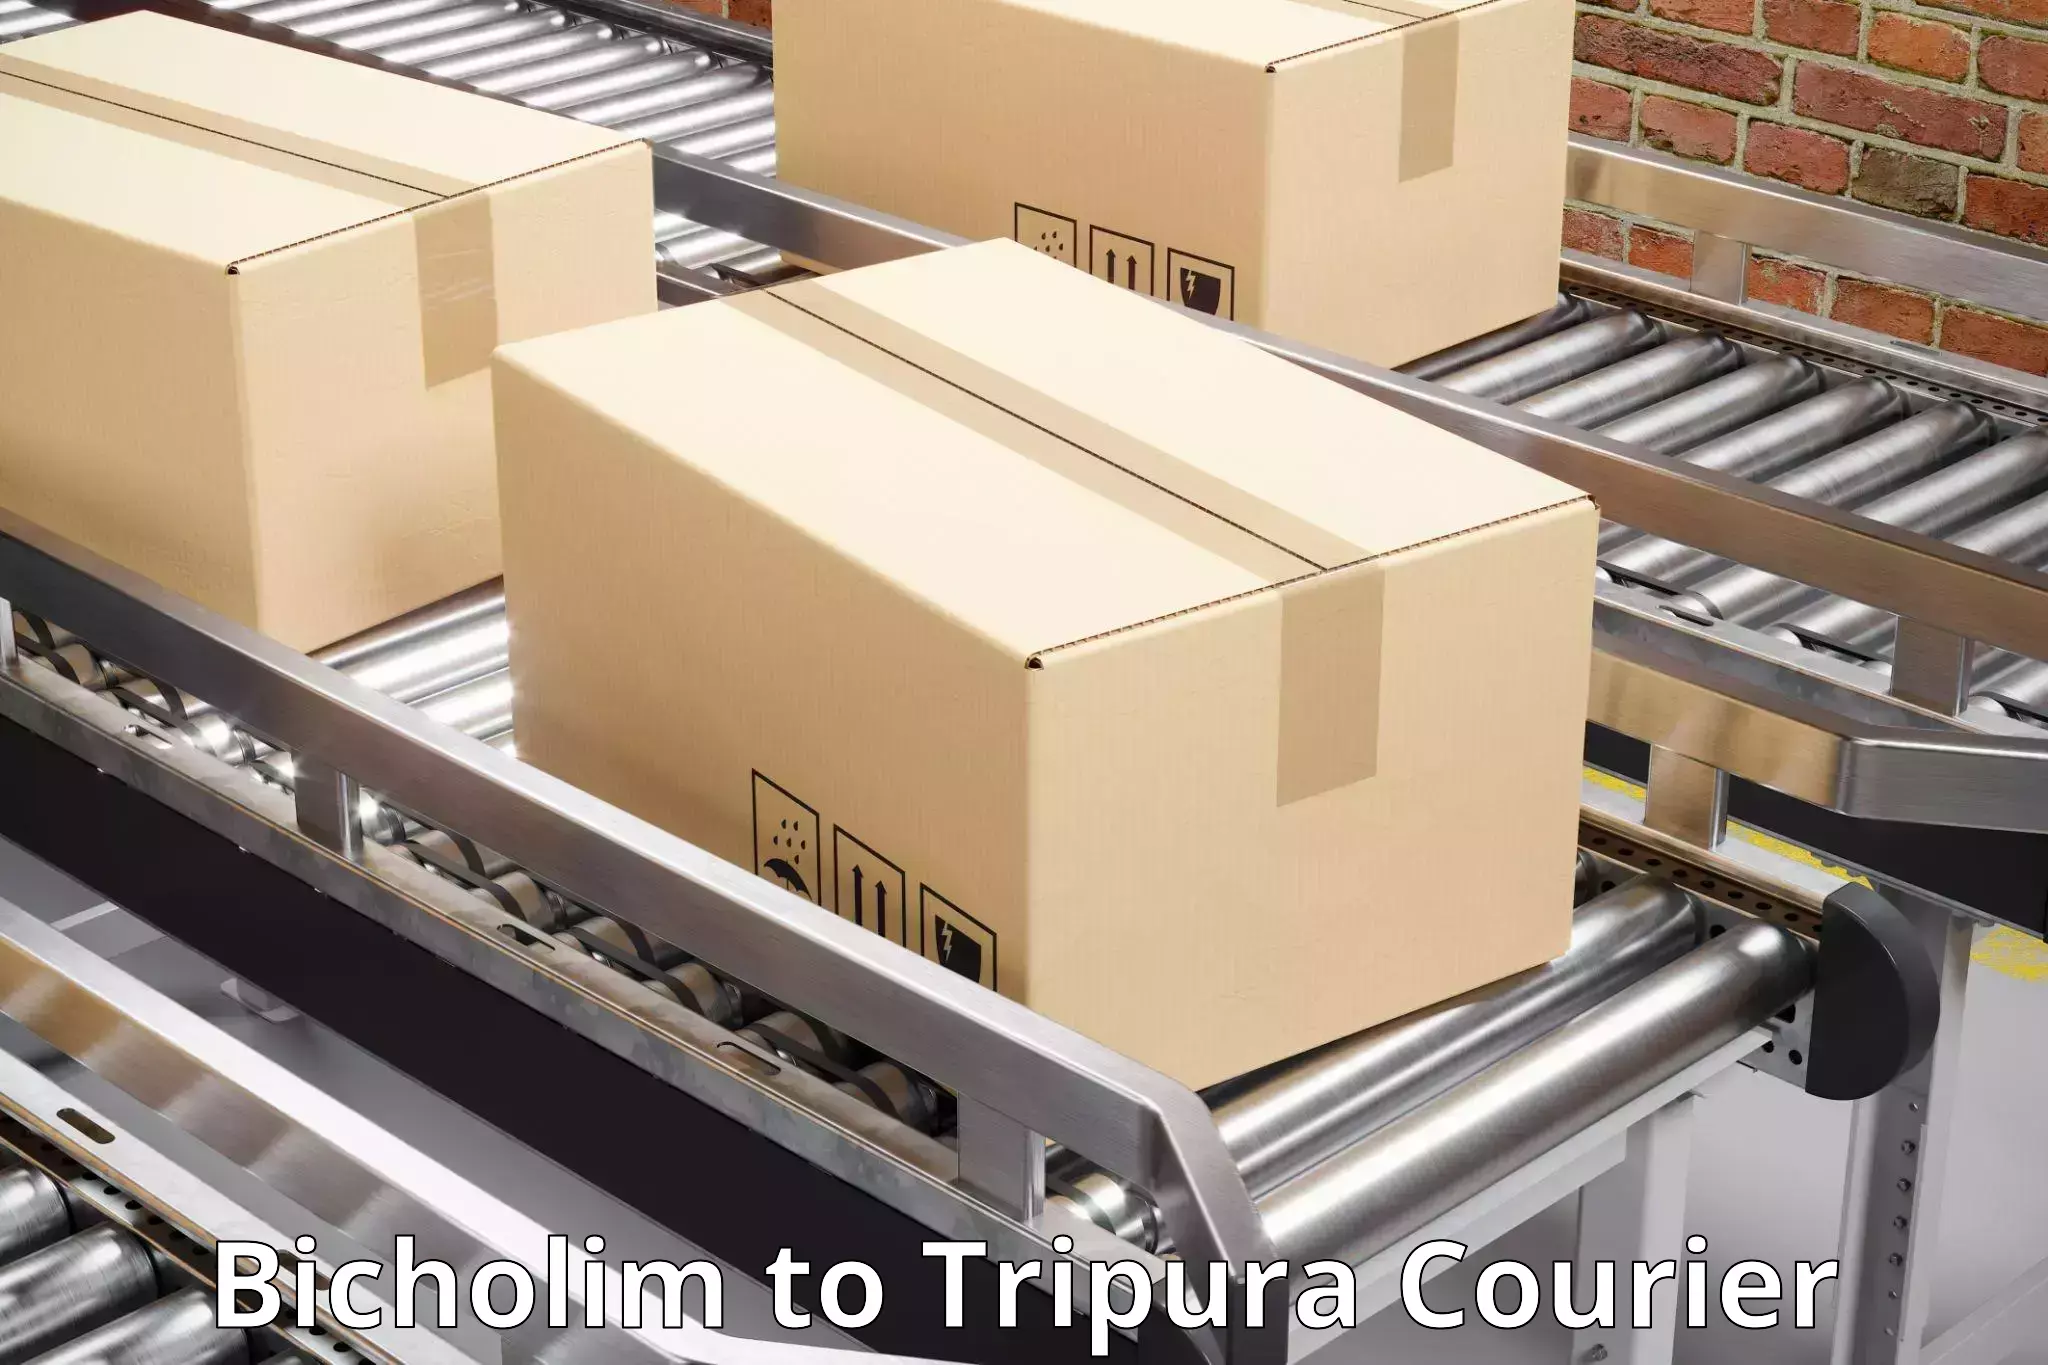 Premium courier solutions Bicholim to Udaipur Tripura